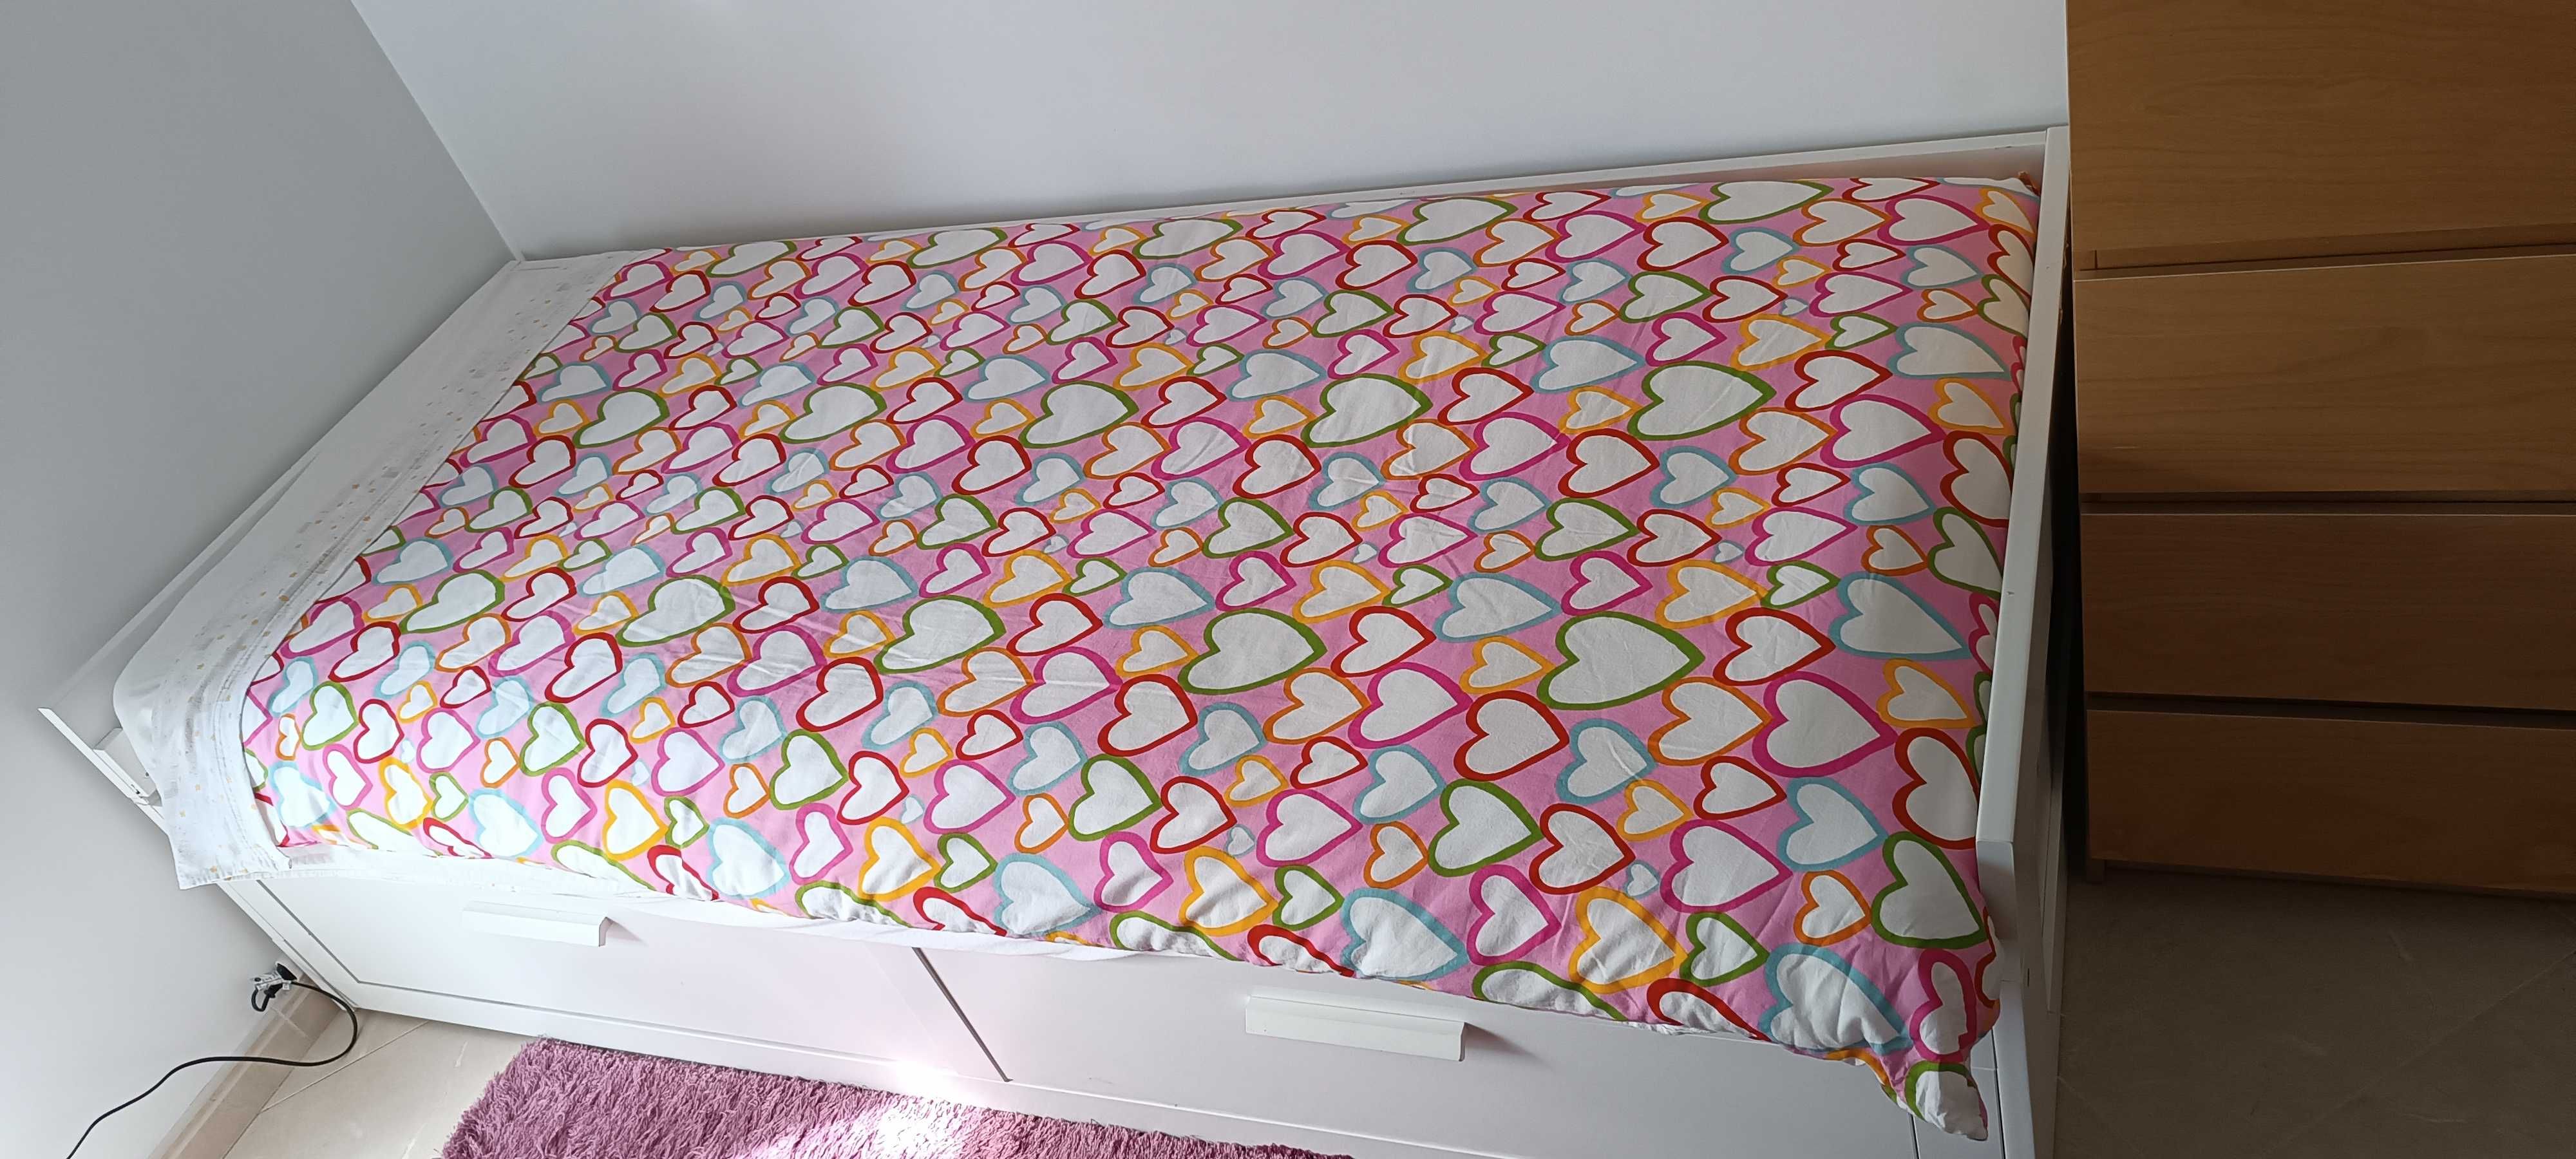 Cama individual dupla (80x200 cm) com colchões, edredões e capas